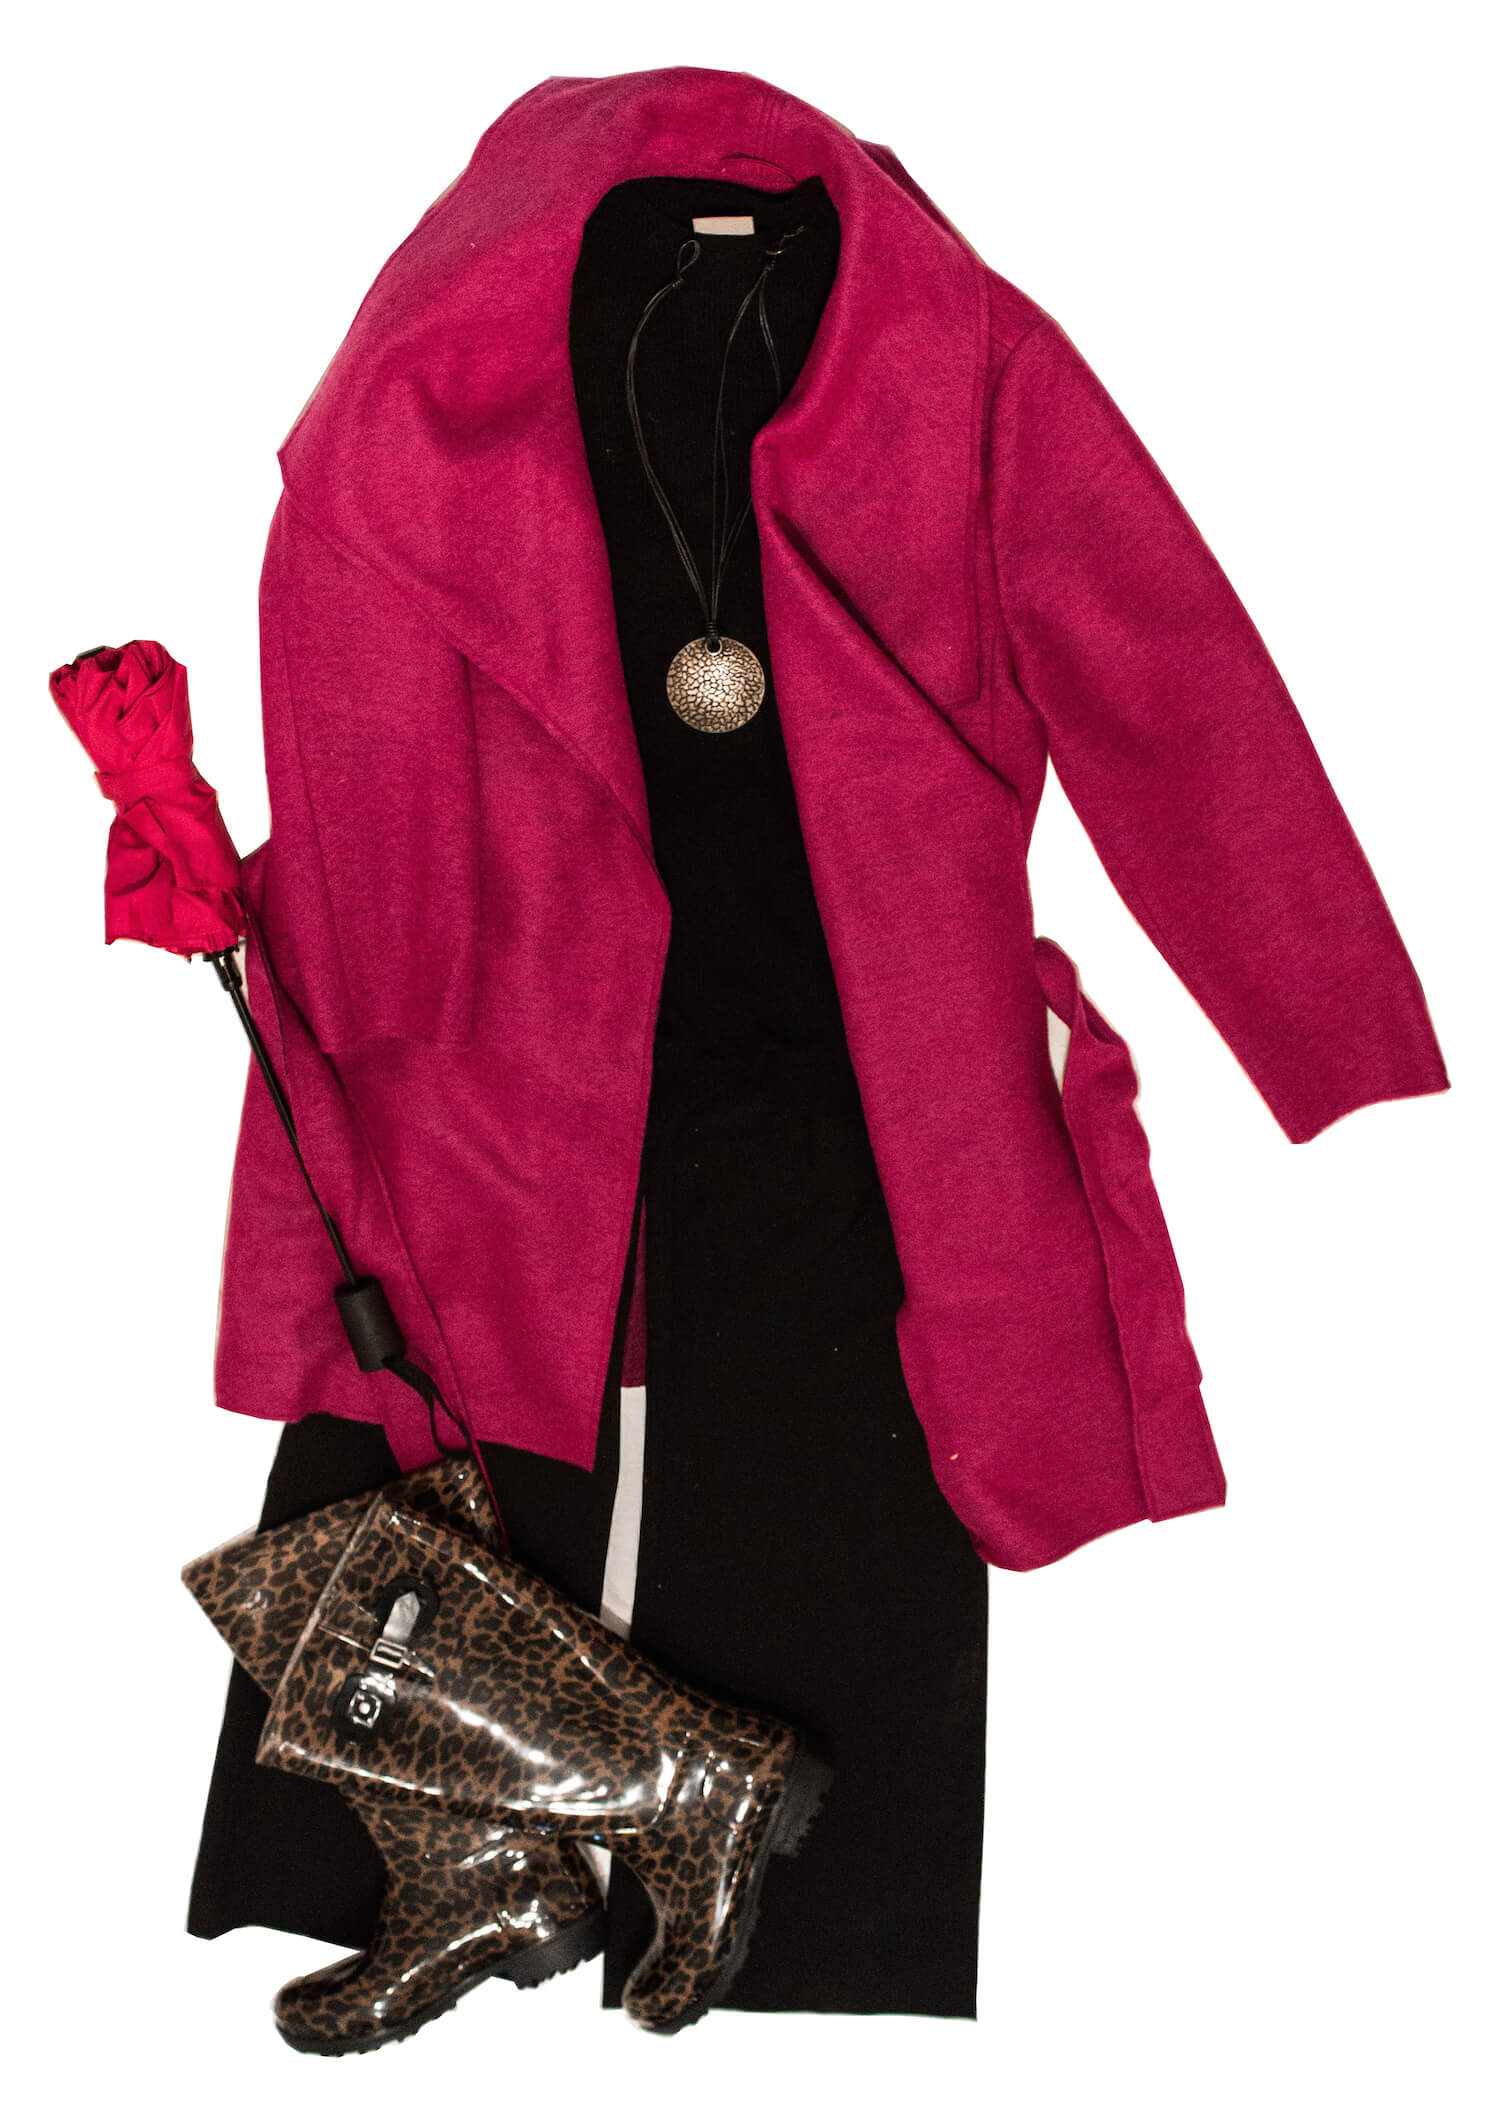 Outfit Inspiration für den Herbst schwarze Culotte, schwarzes Top, fuchsig farbene Jacke und leoprint Gummistiefel